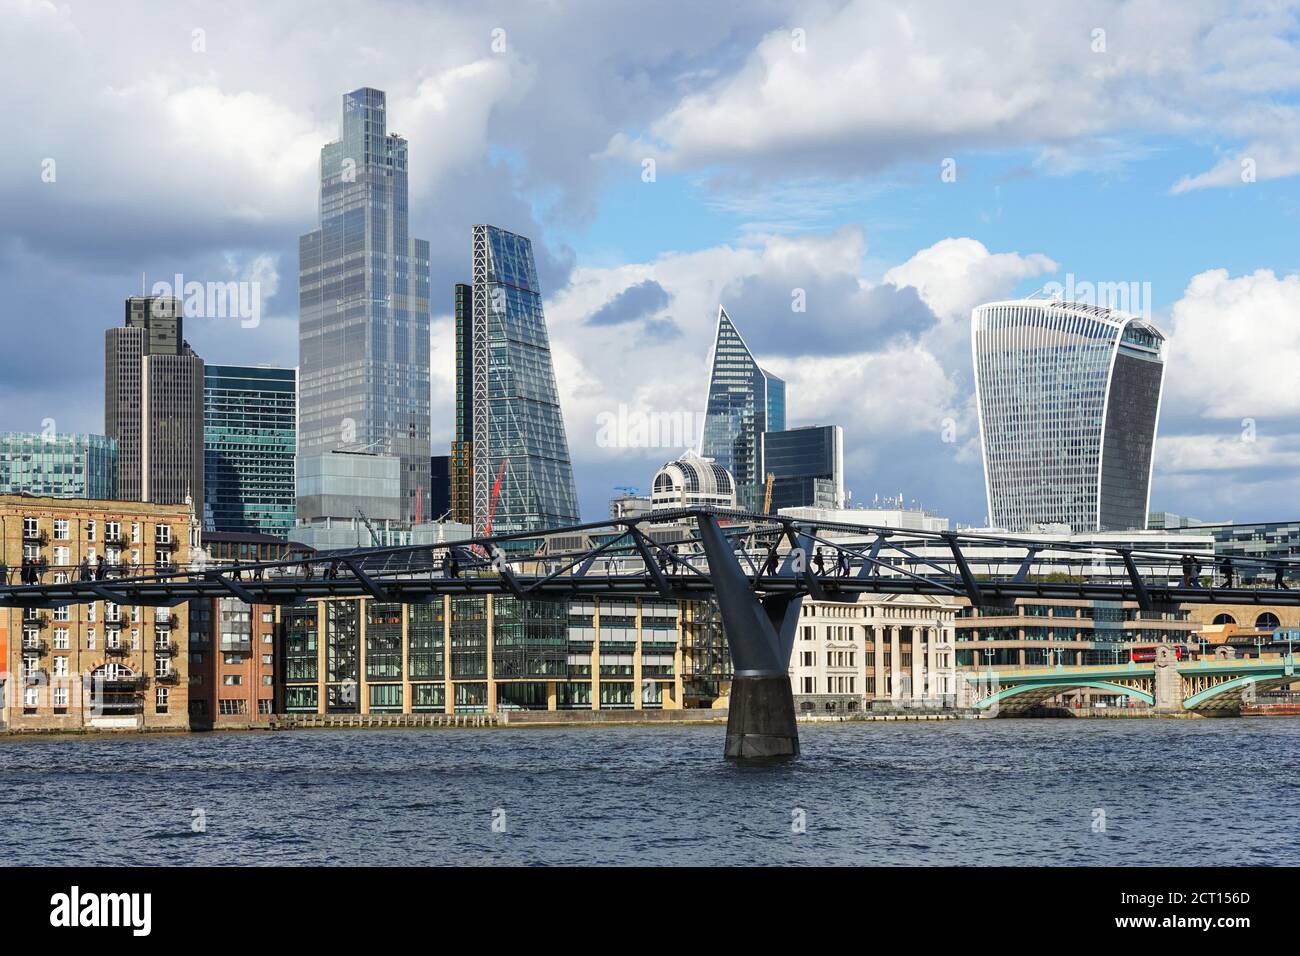 La ville de Londres avec 22 Bishopsgate, Twentytwo, gratte-ciel, Angleterre Royaume-Uni Banque D'Images